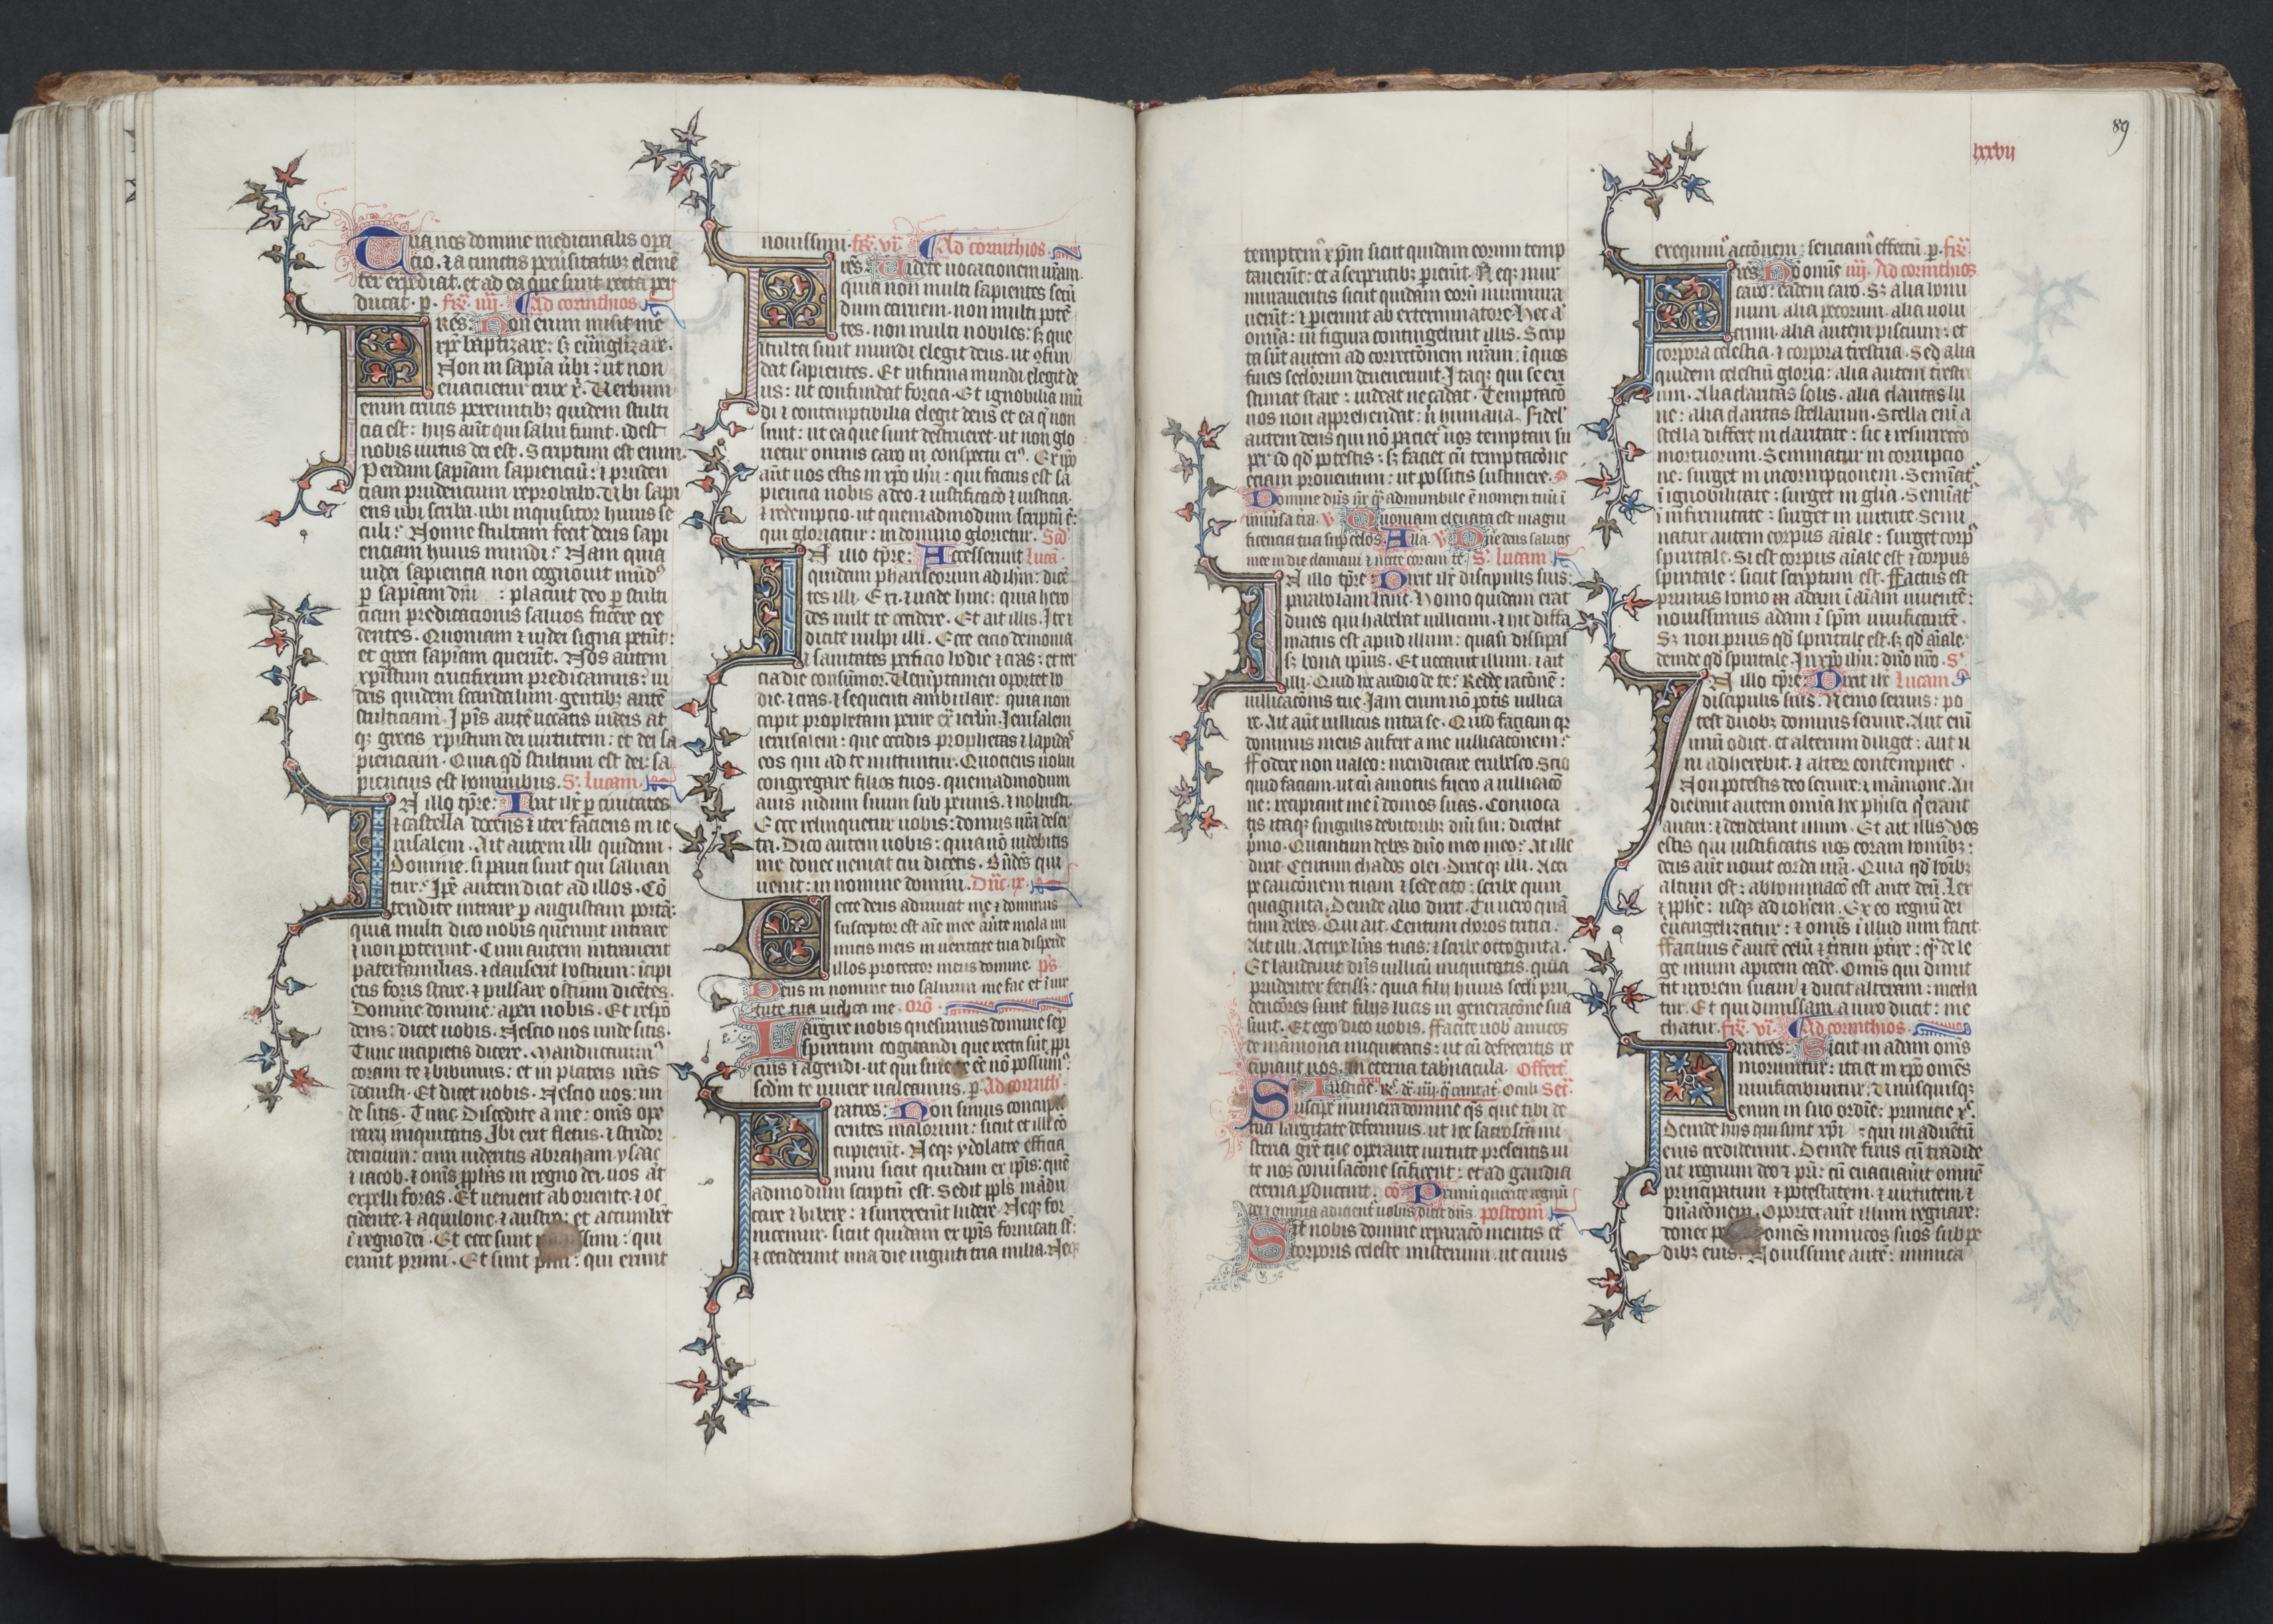 The Gotha Missal:  Fol. 89r, Text